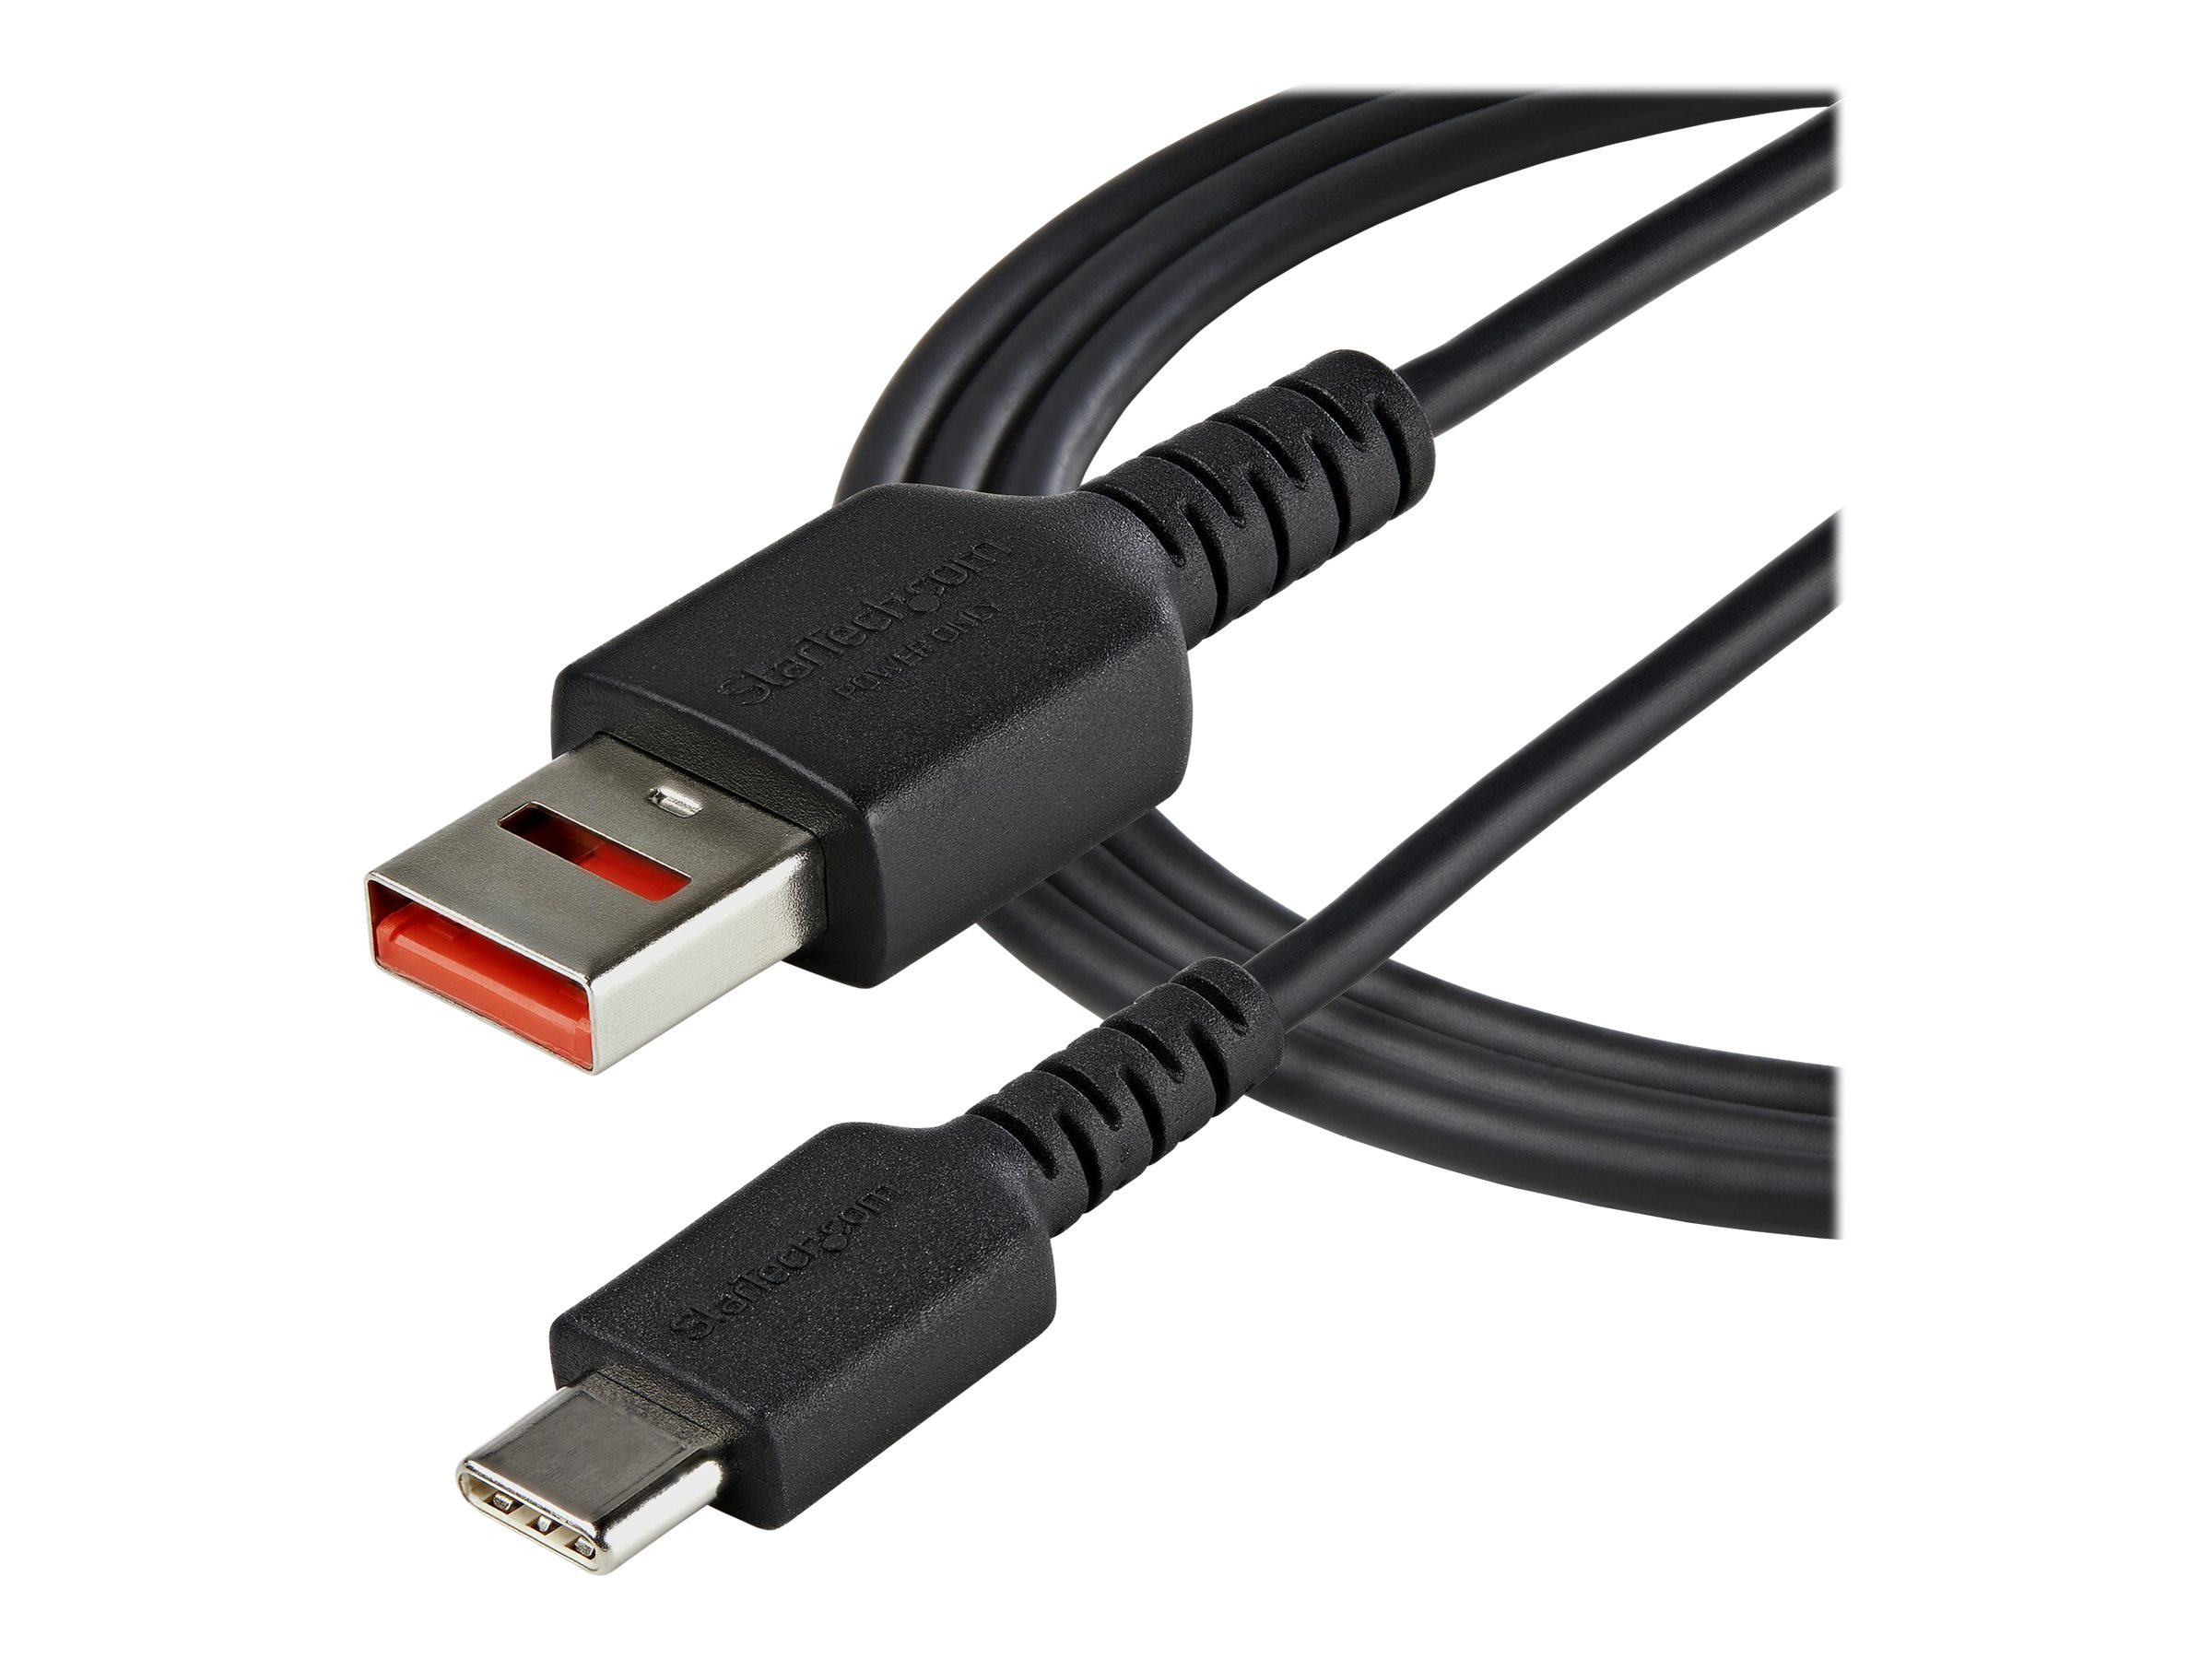 StarTech.com Câble Chargeur Sécurisé 1m - Câble USB-A vers USB-C Data Blocker - Protection No-Data Charge/Alim. SmartPhone/Tablette - Câble Blocage Transfert Données USB (USBSCHAC1M) - Câble USB - USB (alimentation uniquement) (M) pour USB-C (alimentation uniquement) (M) - 5 V - 2.4 A - 100 cm - moulé, passif - noir - USBSCHAC1M - Câbles USB